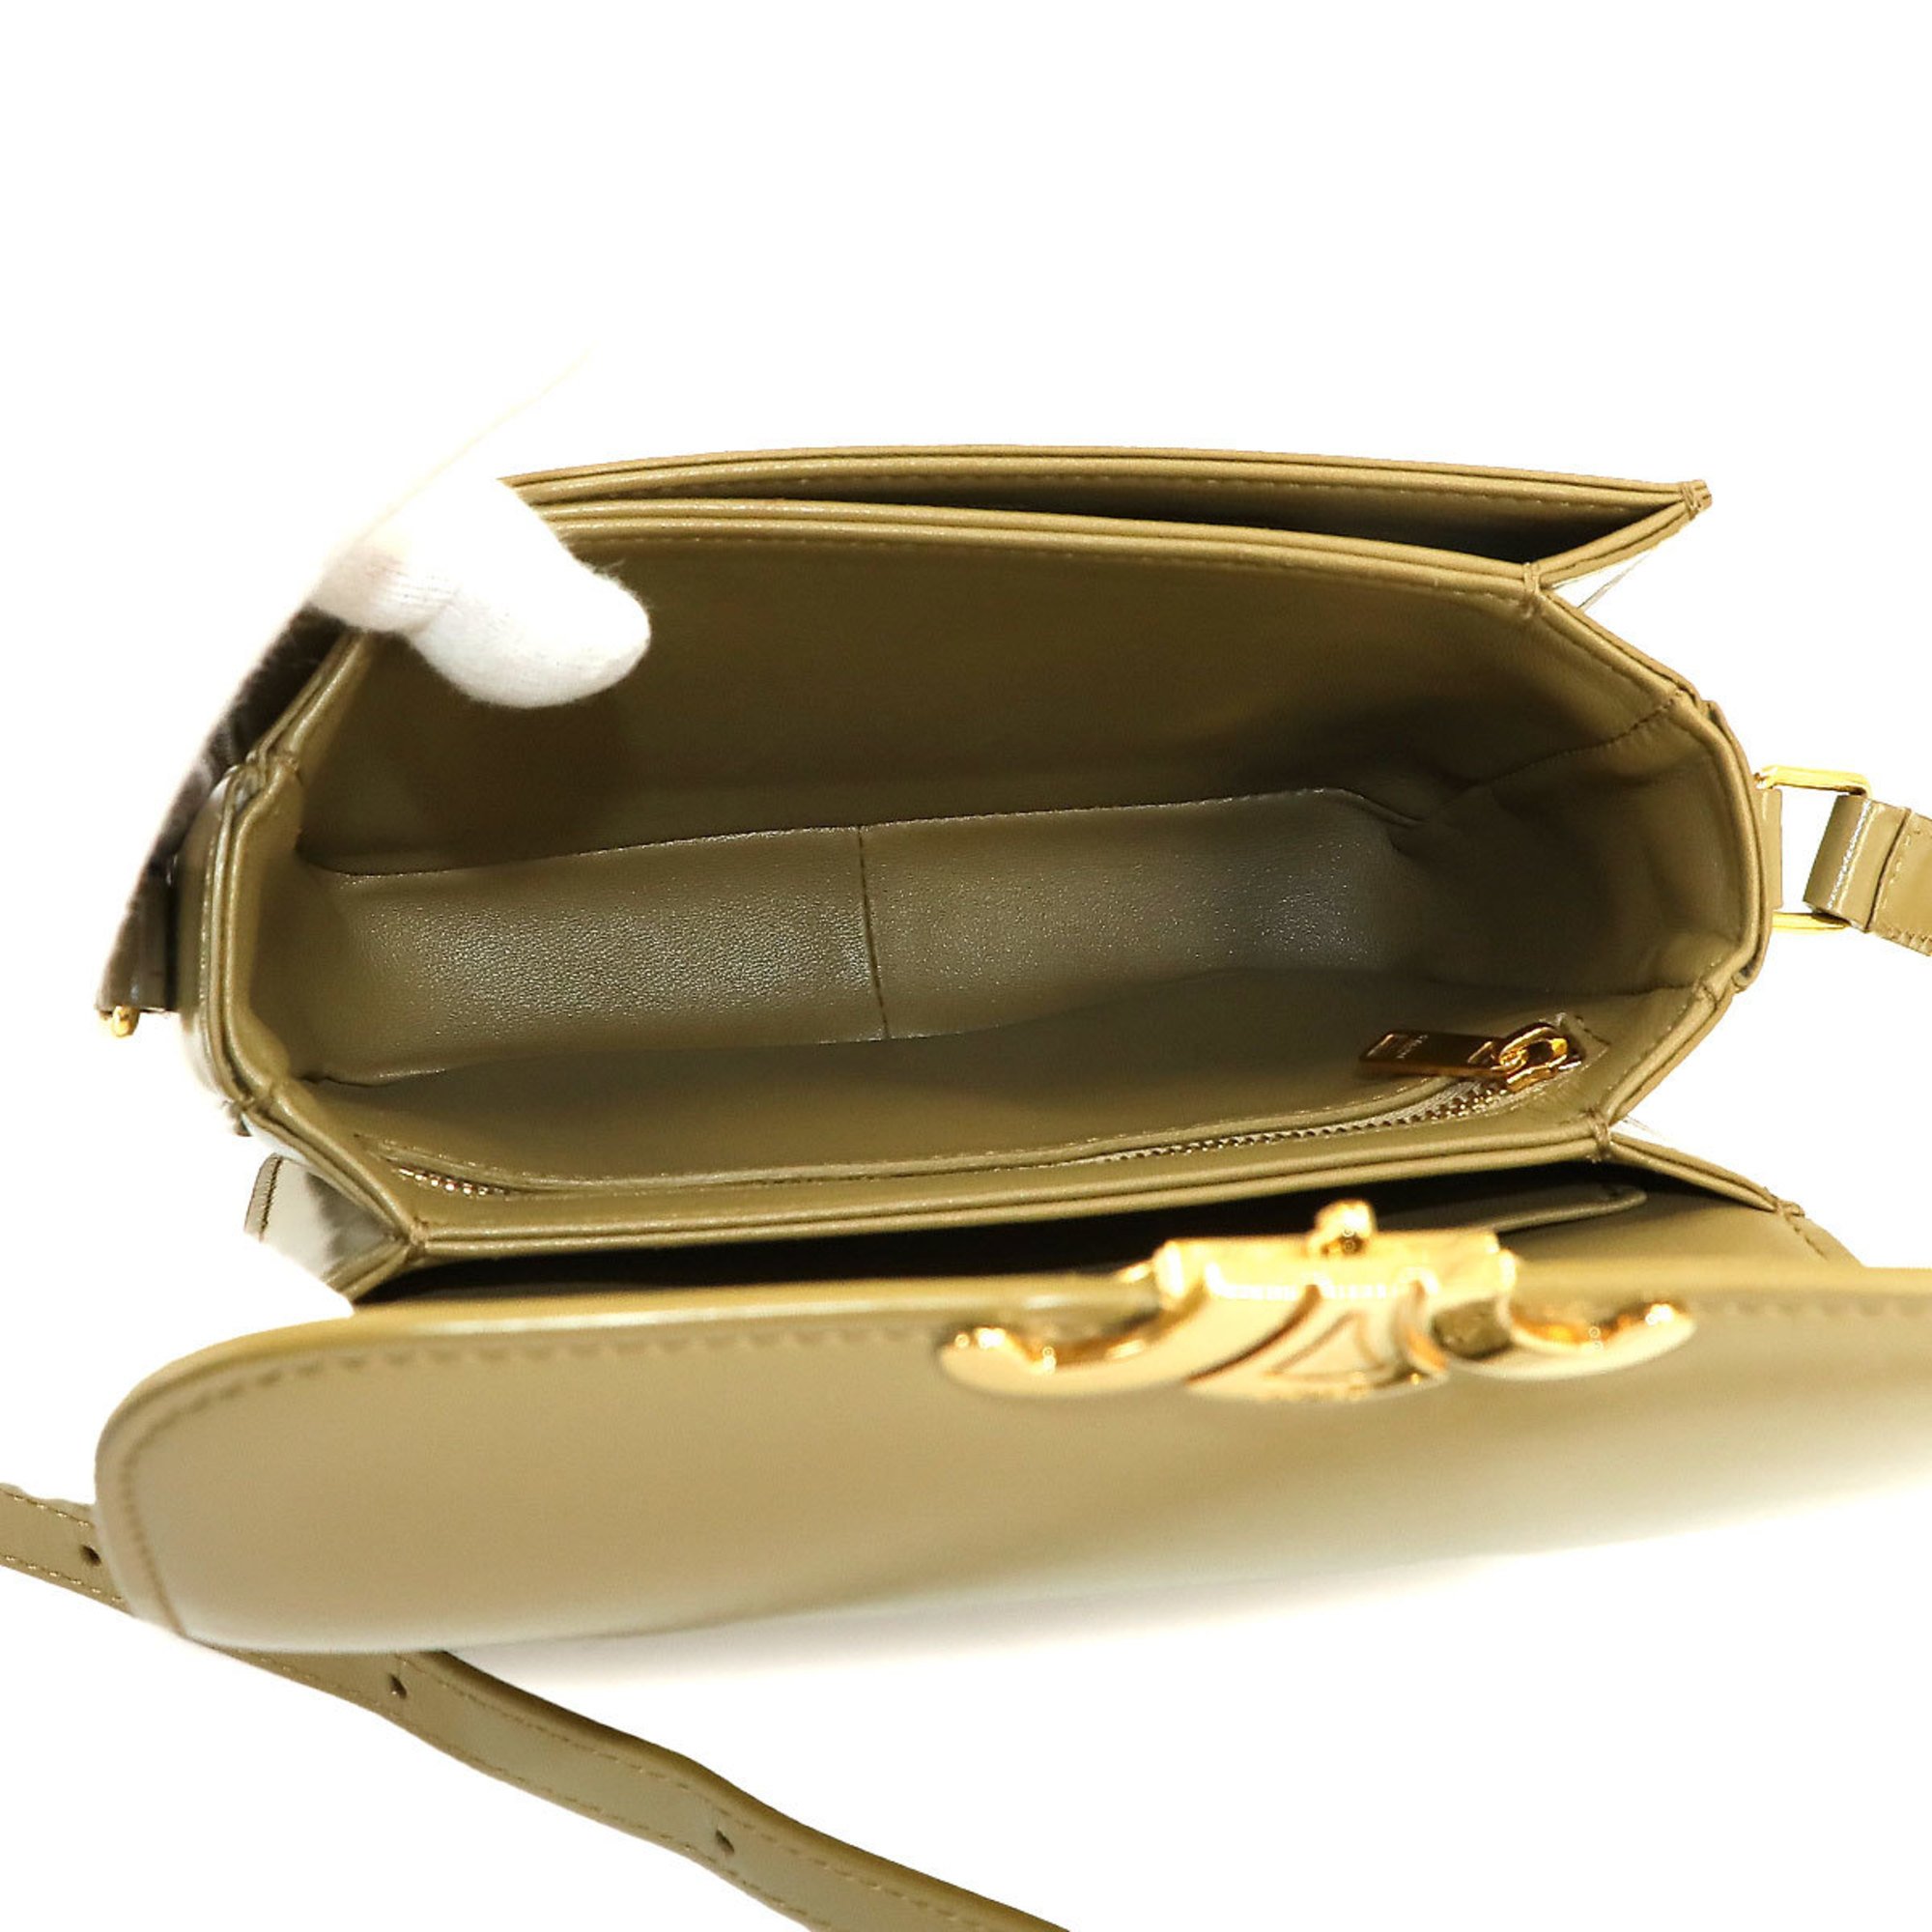 CELINE Teen Triomphe Bag Shoulder Leather Green 188423BF4 Gold Hardware